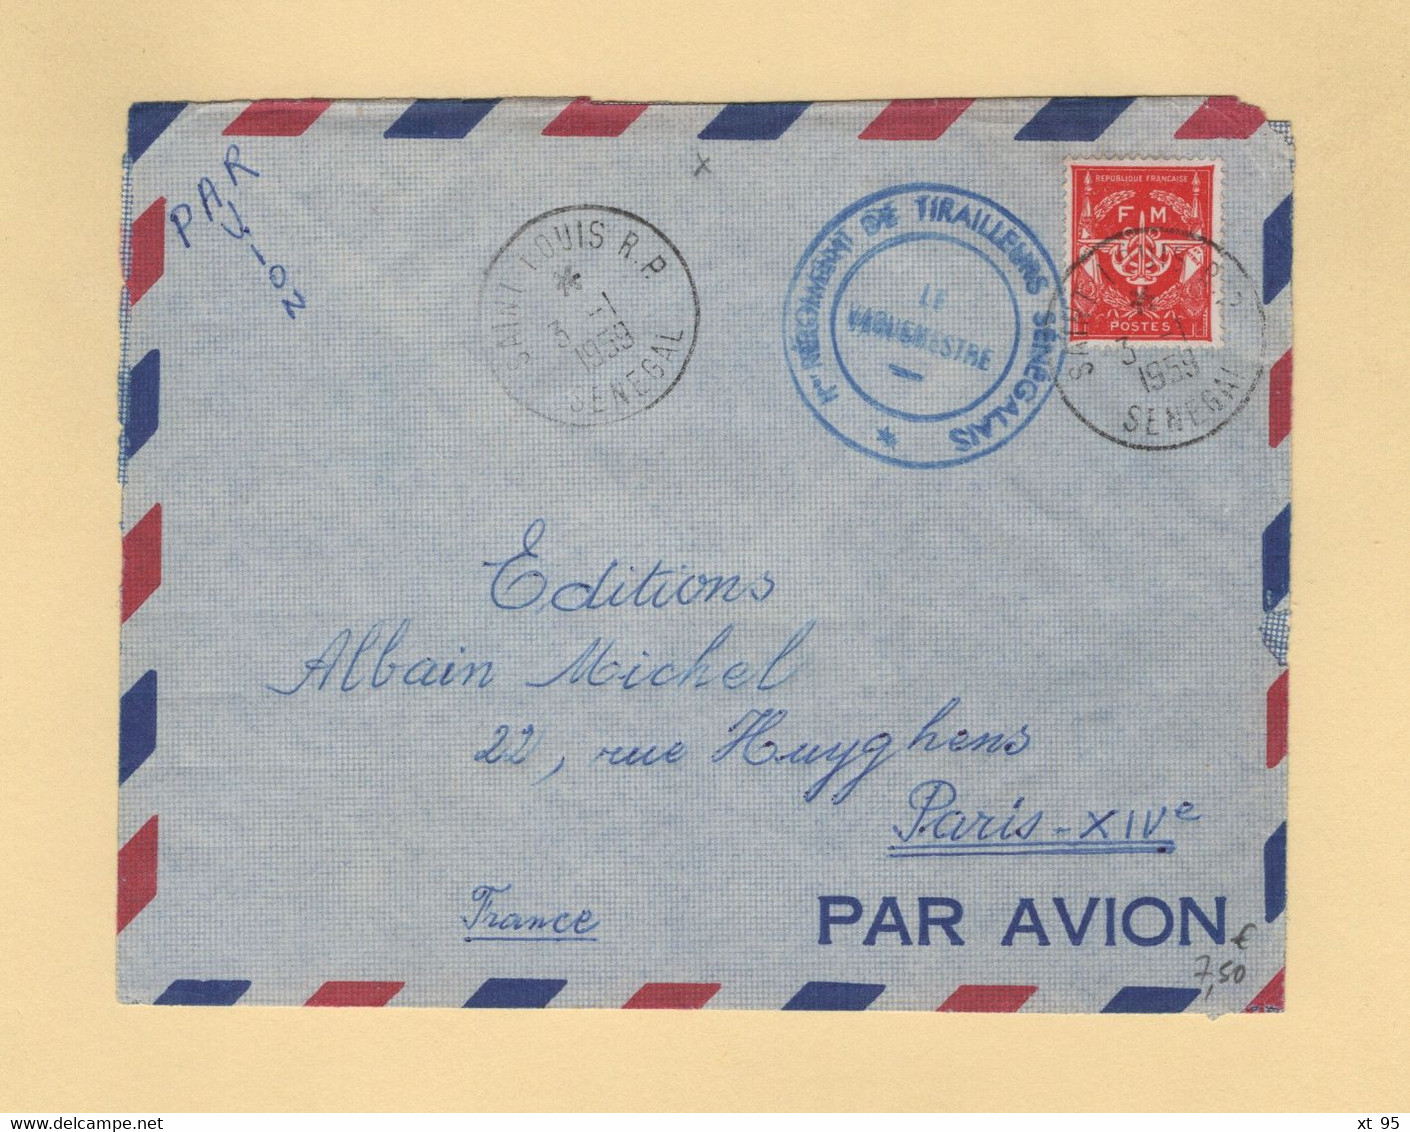 Timbre FM - Saint Louis - Senegal - 1959 - 1er Regiment De Tirailleurs Senegalais - Military Postage Stamps